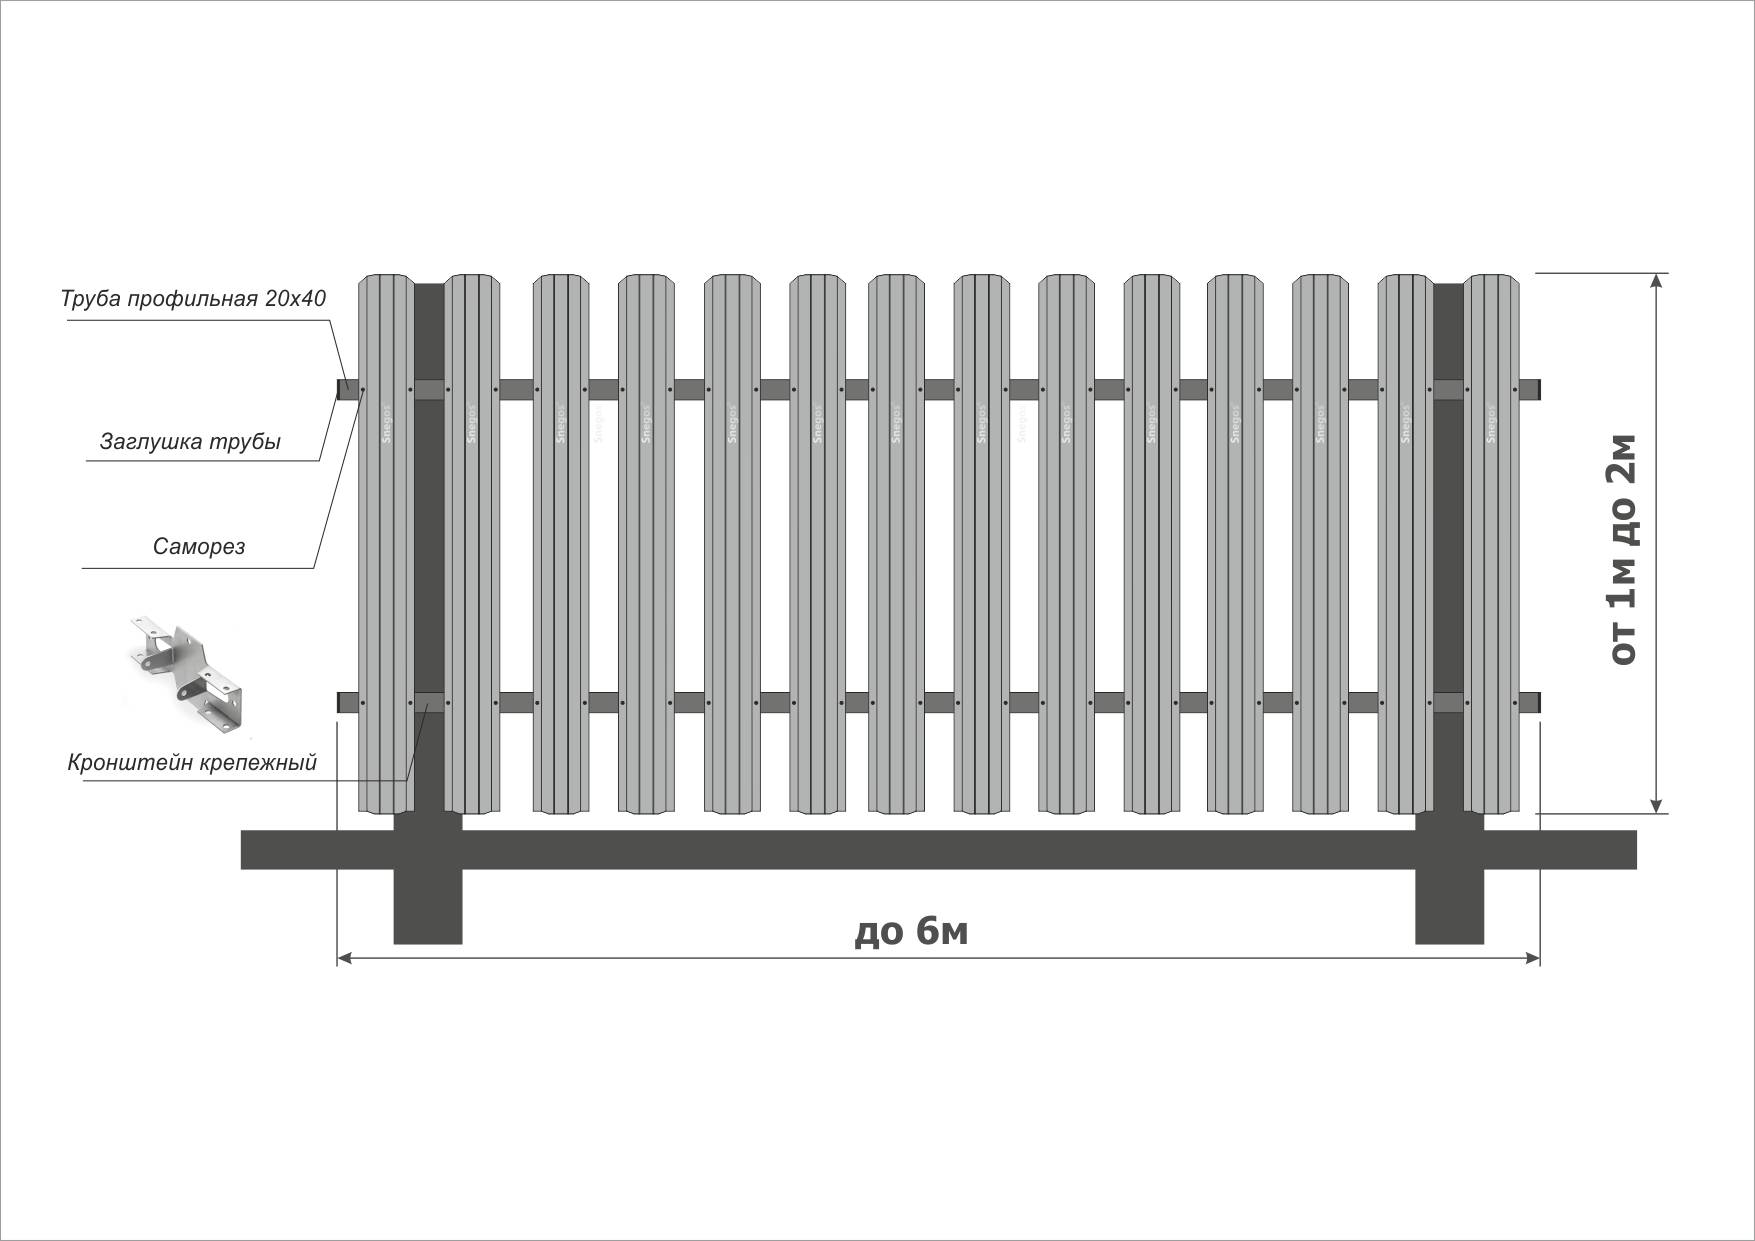 Забор из профнастила (профлиста) своими руками: установка забора - пошаговая инструкция монтажа